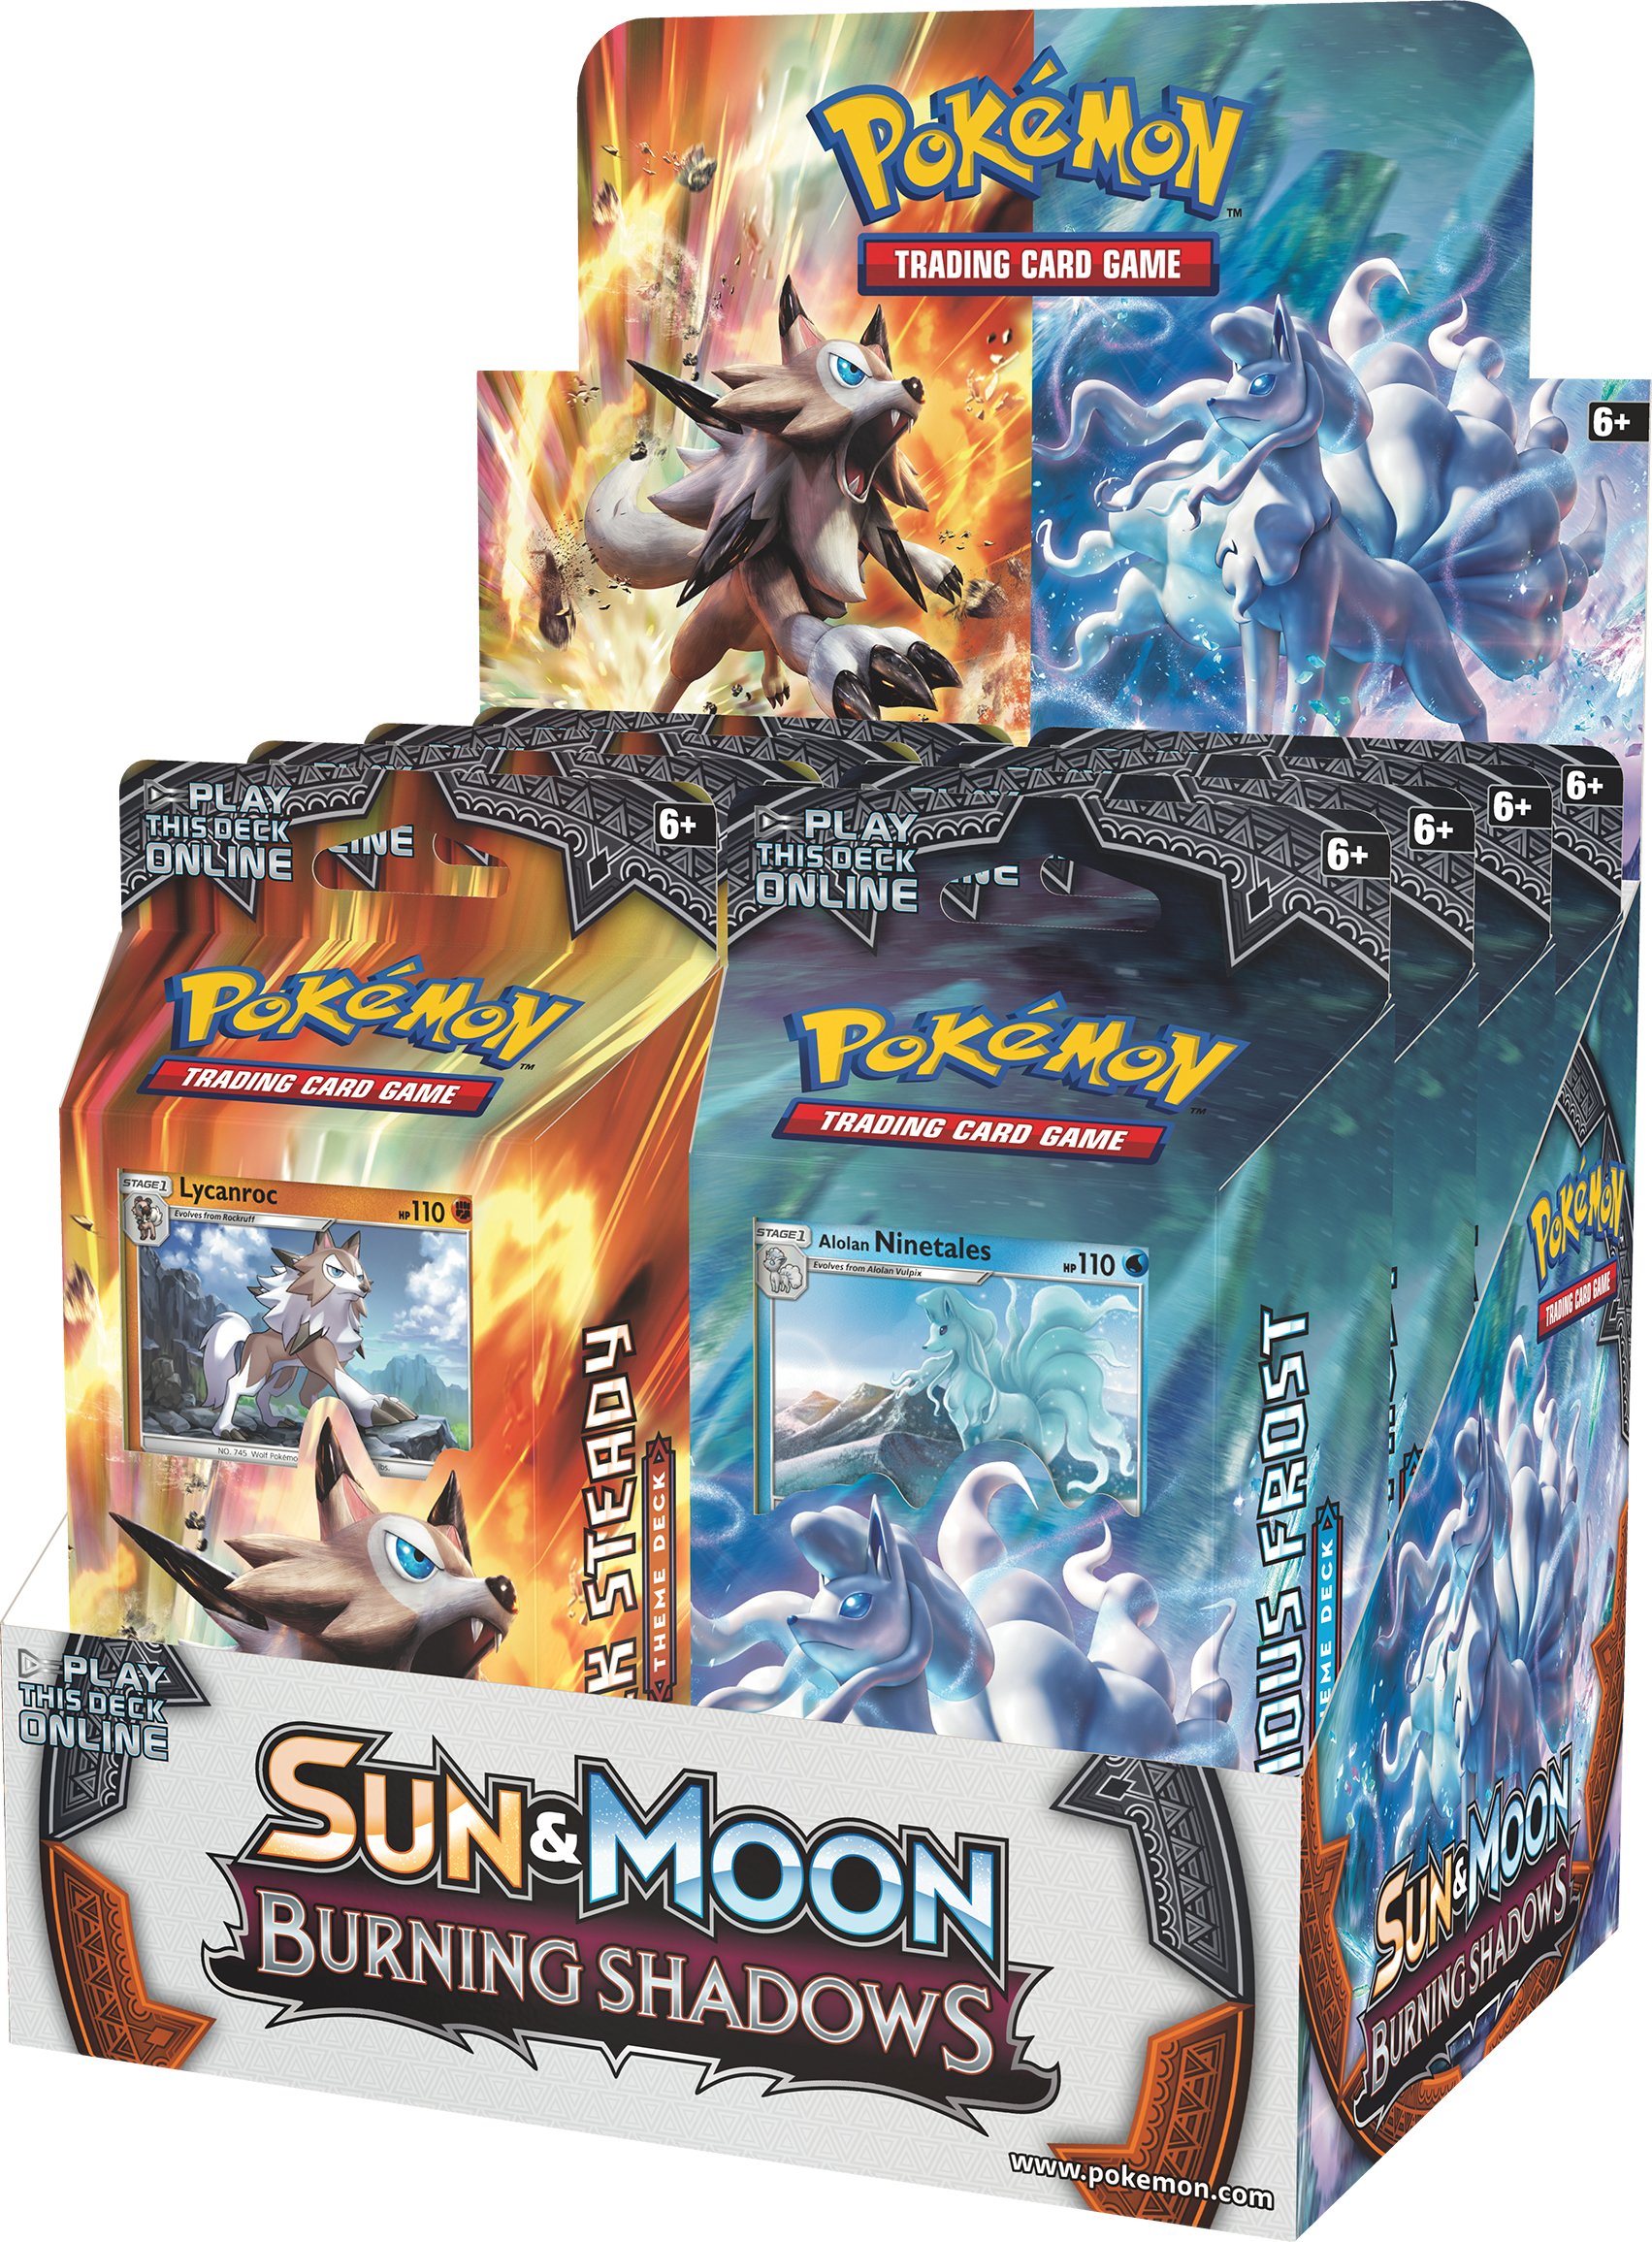 Pokémon Tcg Sun Moon Burning Shadows Expansion Released